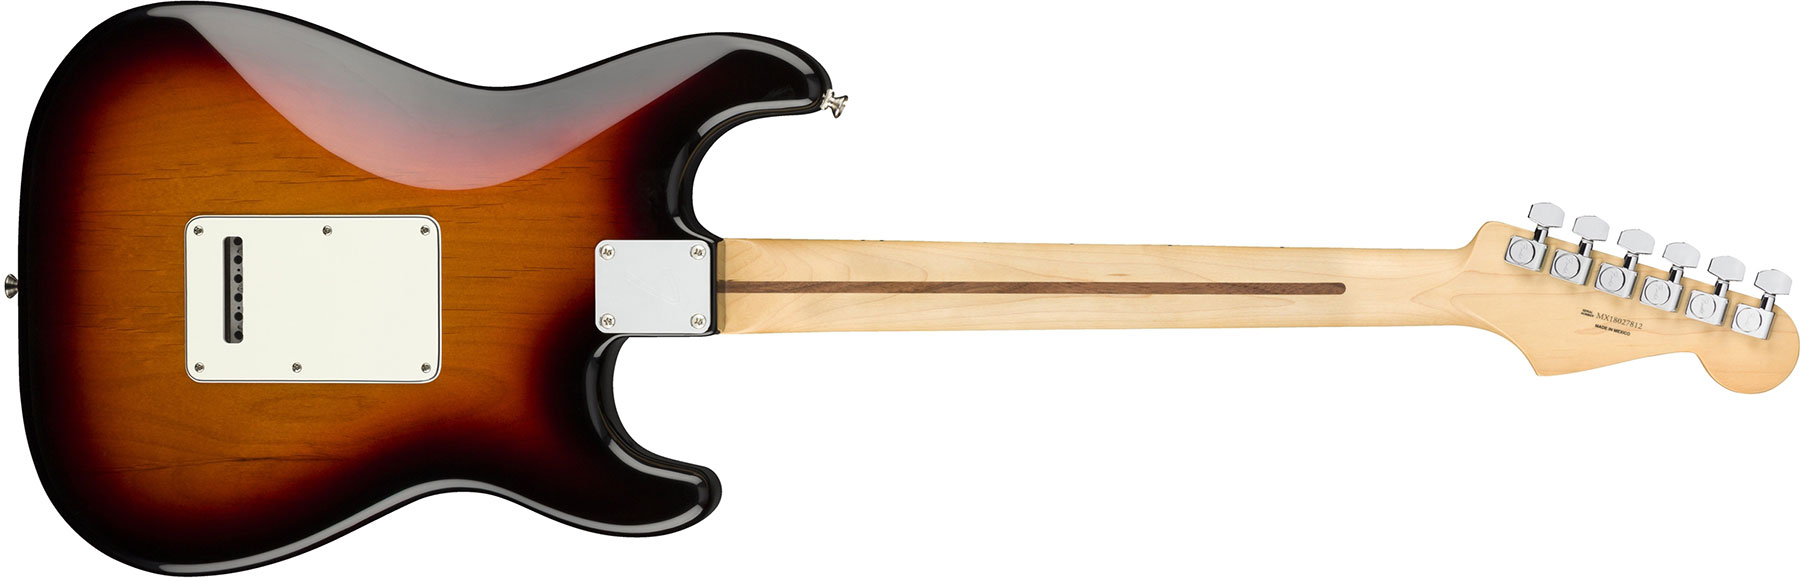 Fender Strat Player Lh Gaucher Mex Sss Mn - 3-color Sunburst - Linkshandige elektrische gitaar - Variation 4